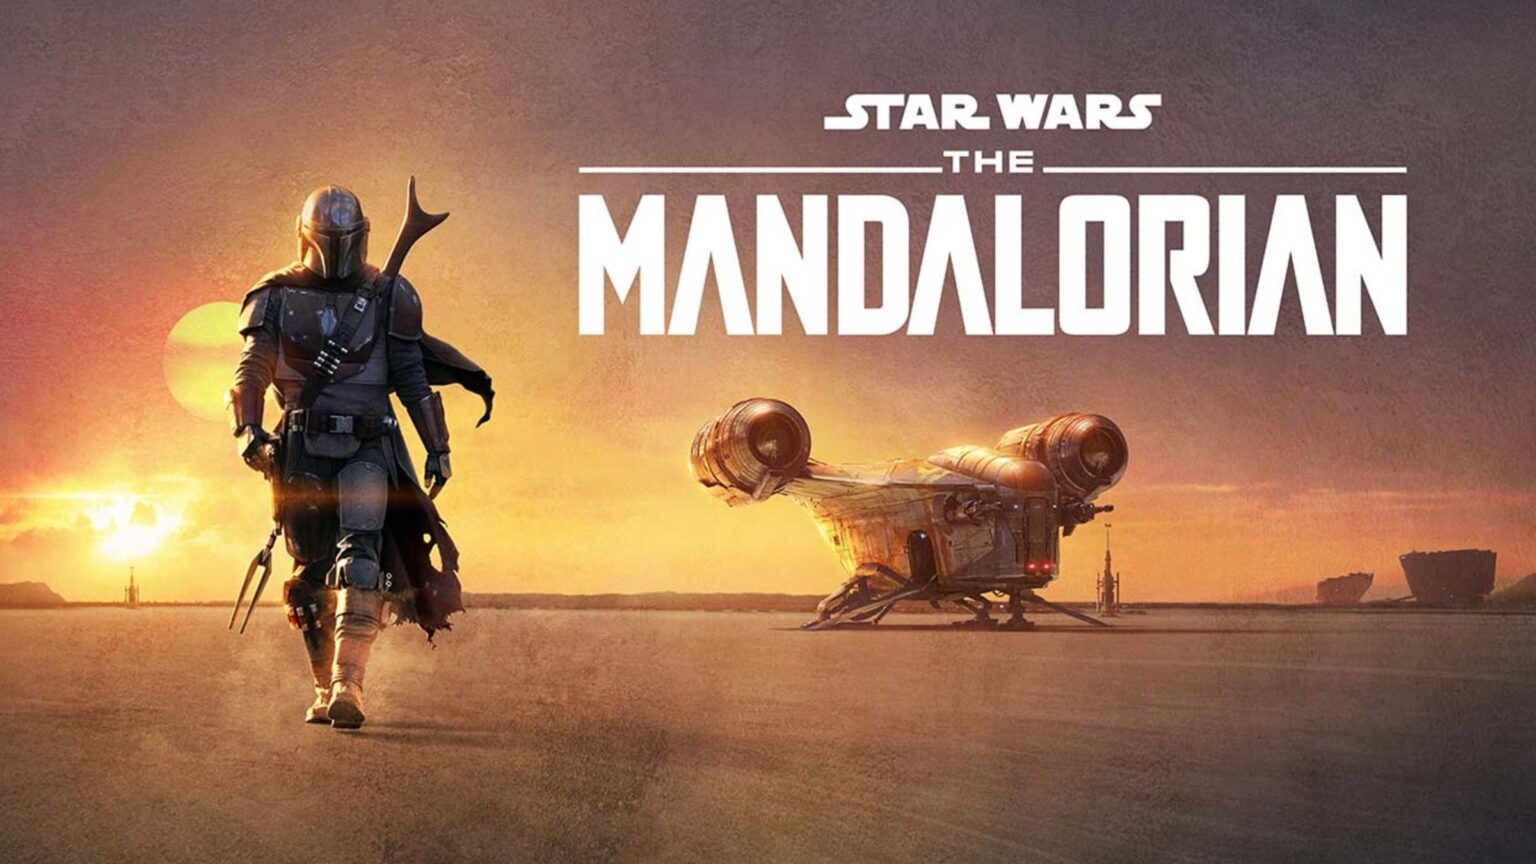 ¿Sigues perdide con la cronología de Star Wars? Entérate del orden oficial de las películas para ver 'The Mandalorian' a gusto.